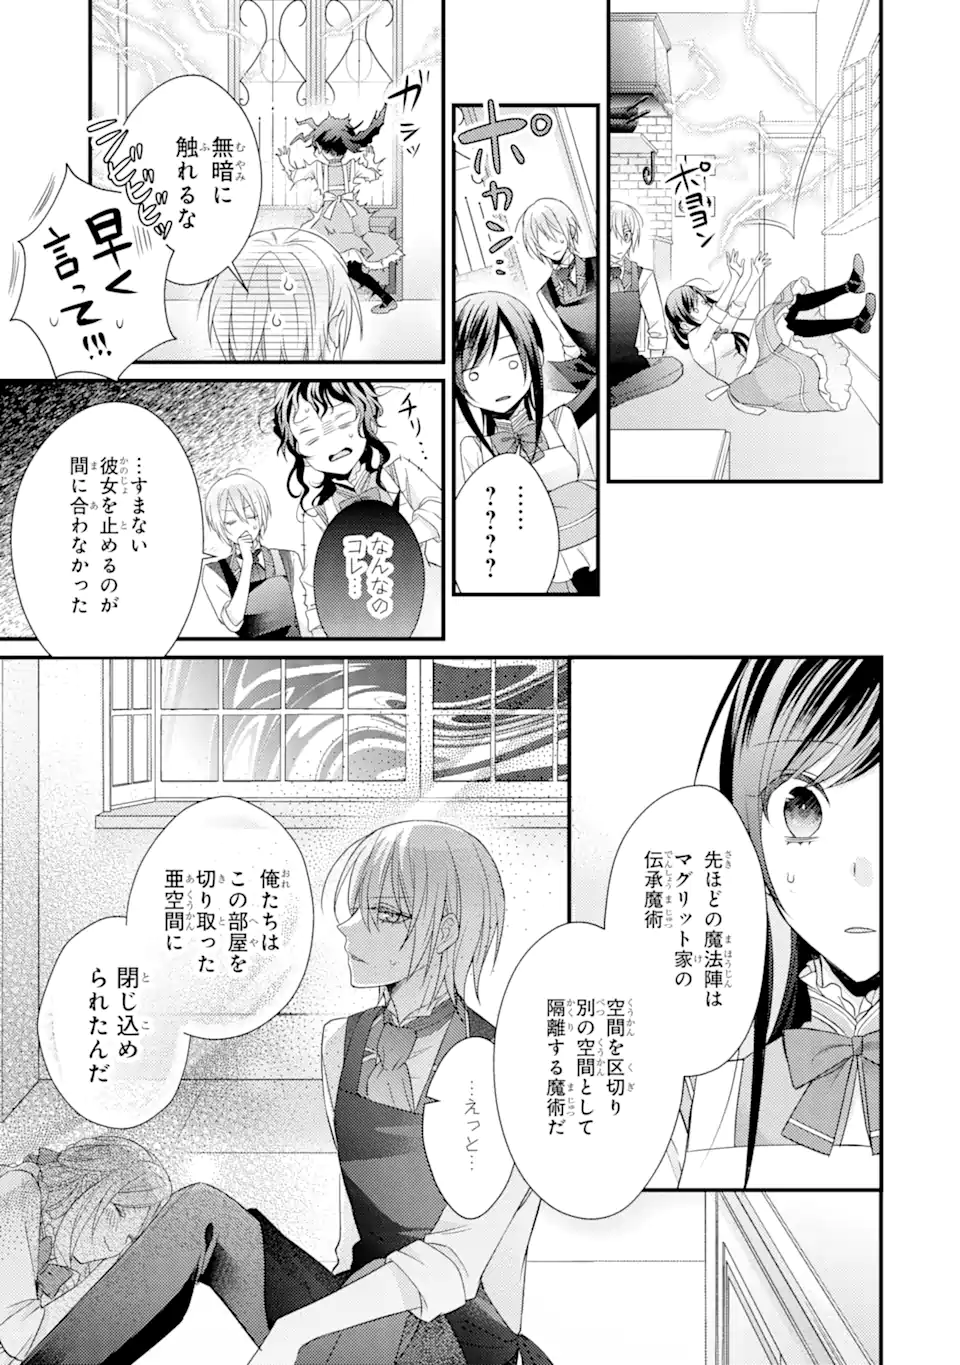 Kekkon suru Shinde Shimau no de, Kanst Seijo (Lv. 99) wa Meshi Tero Shimasu! - Chapter 7.3 - Page 2